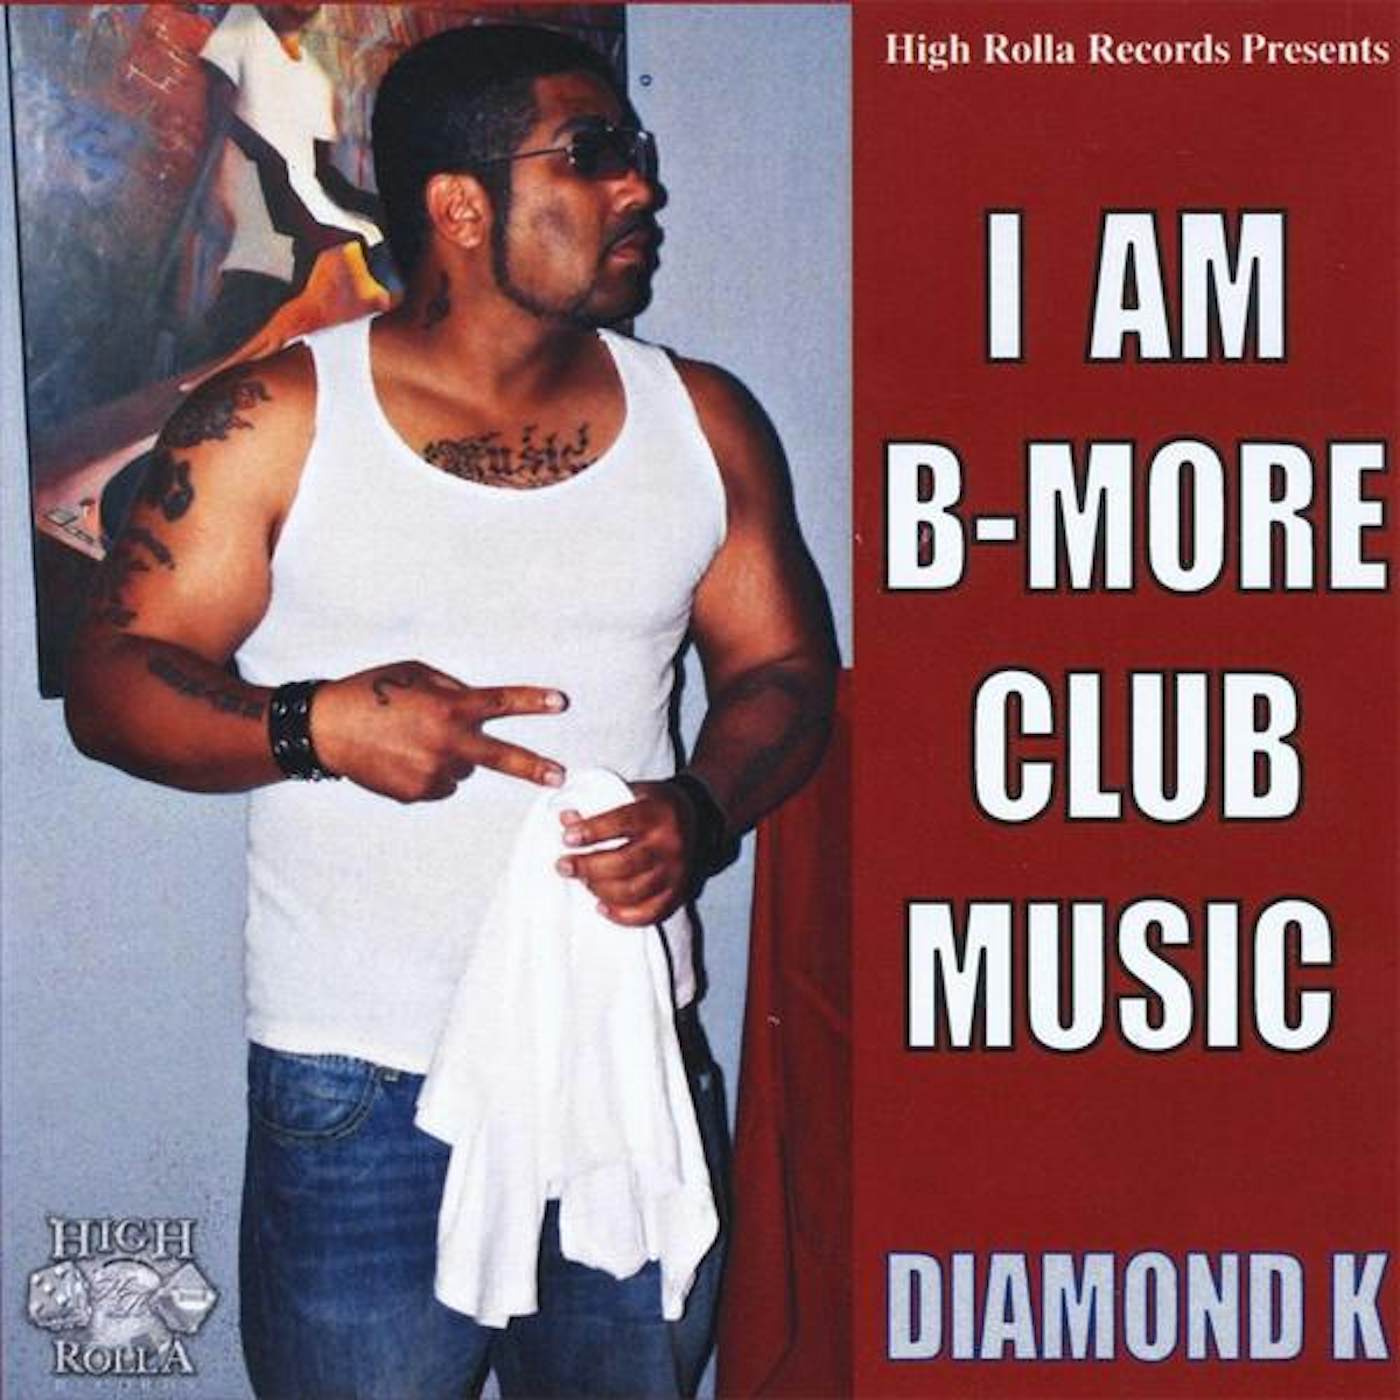 Diamond K I AM B-MORE CLUB MUSIC CD